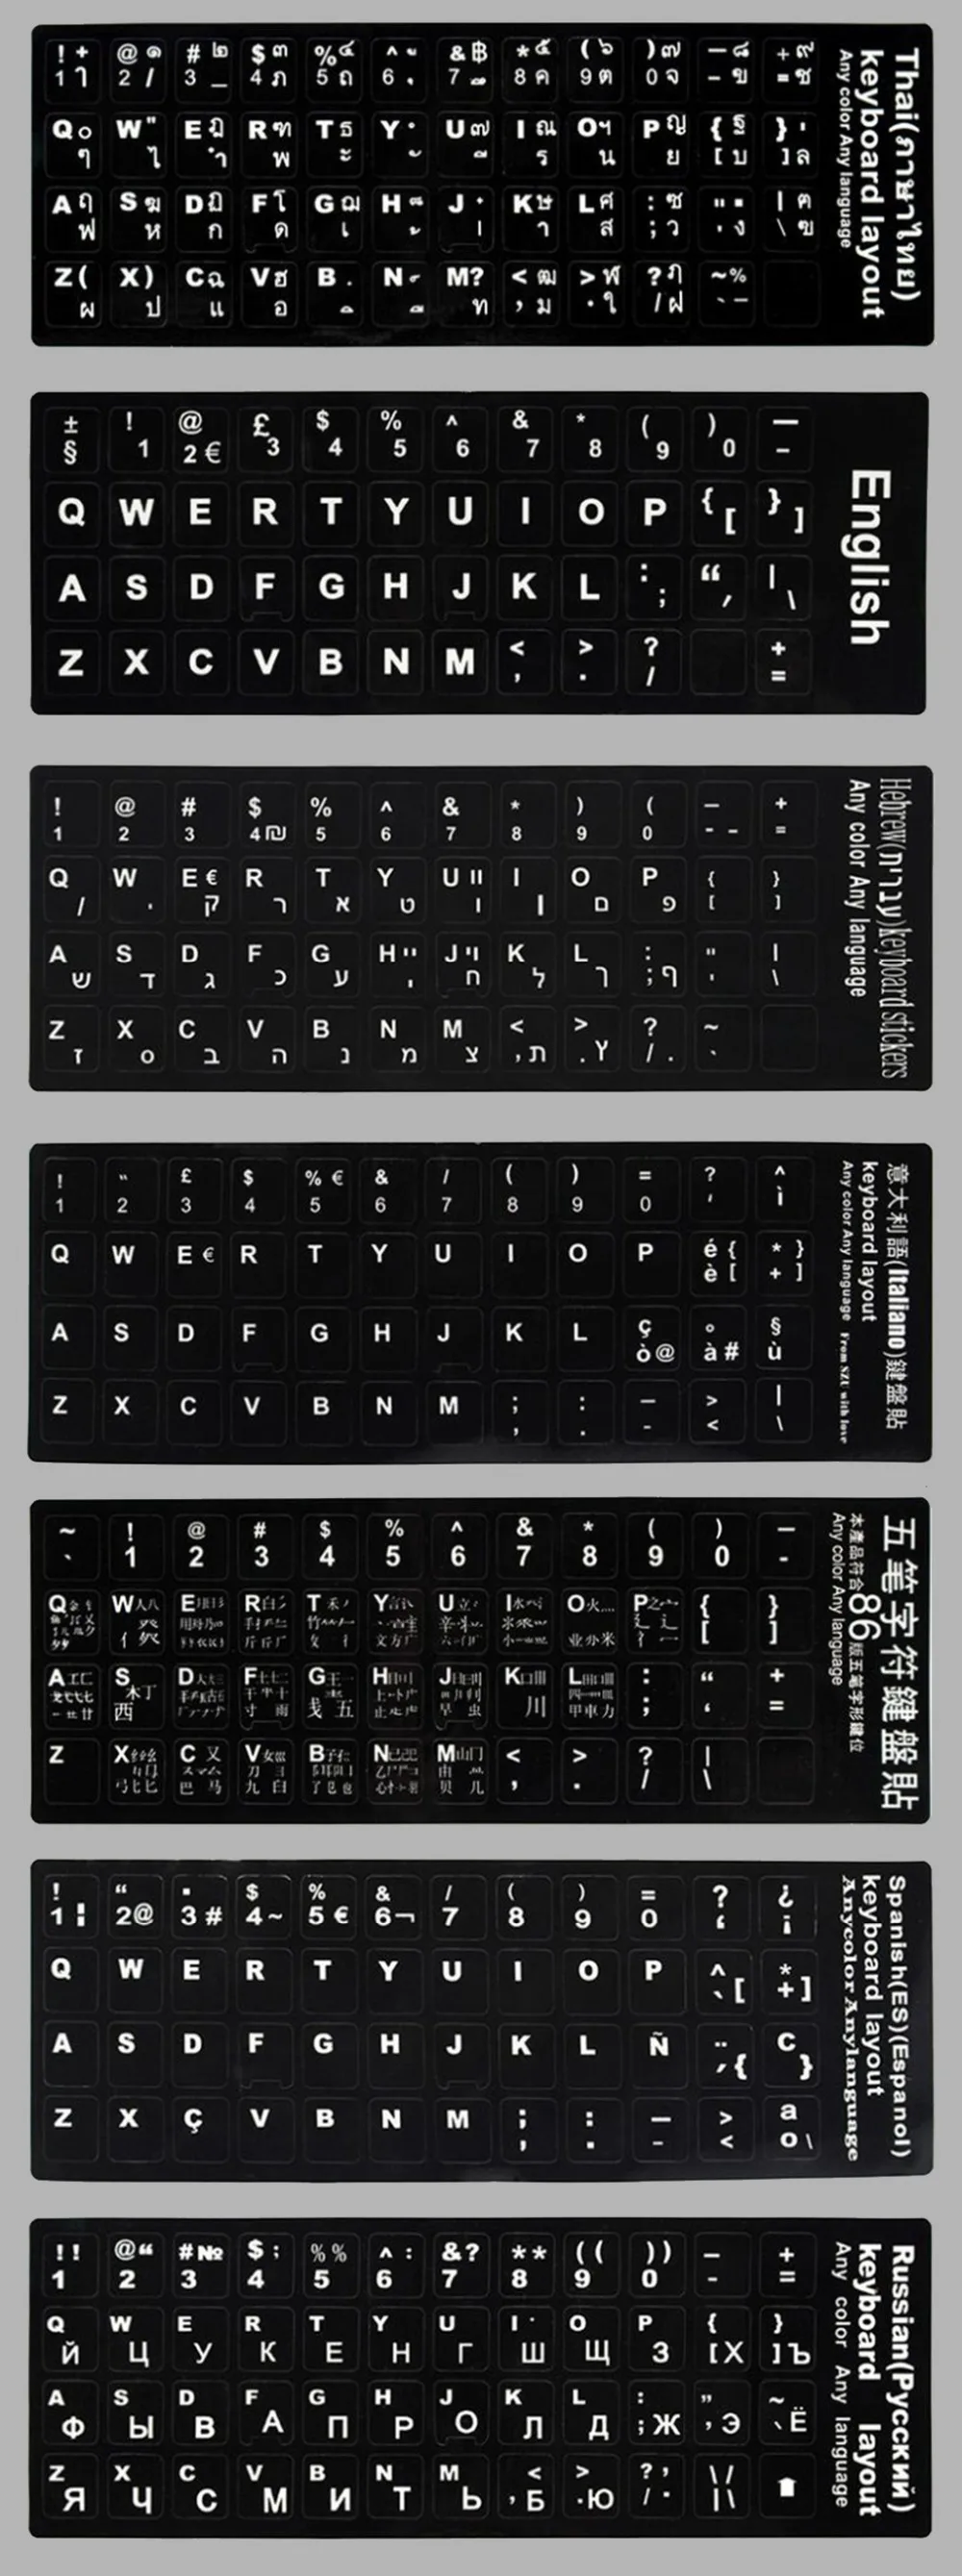 keyboard language 2